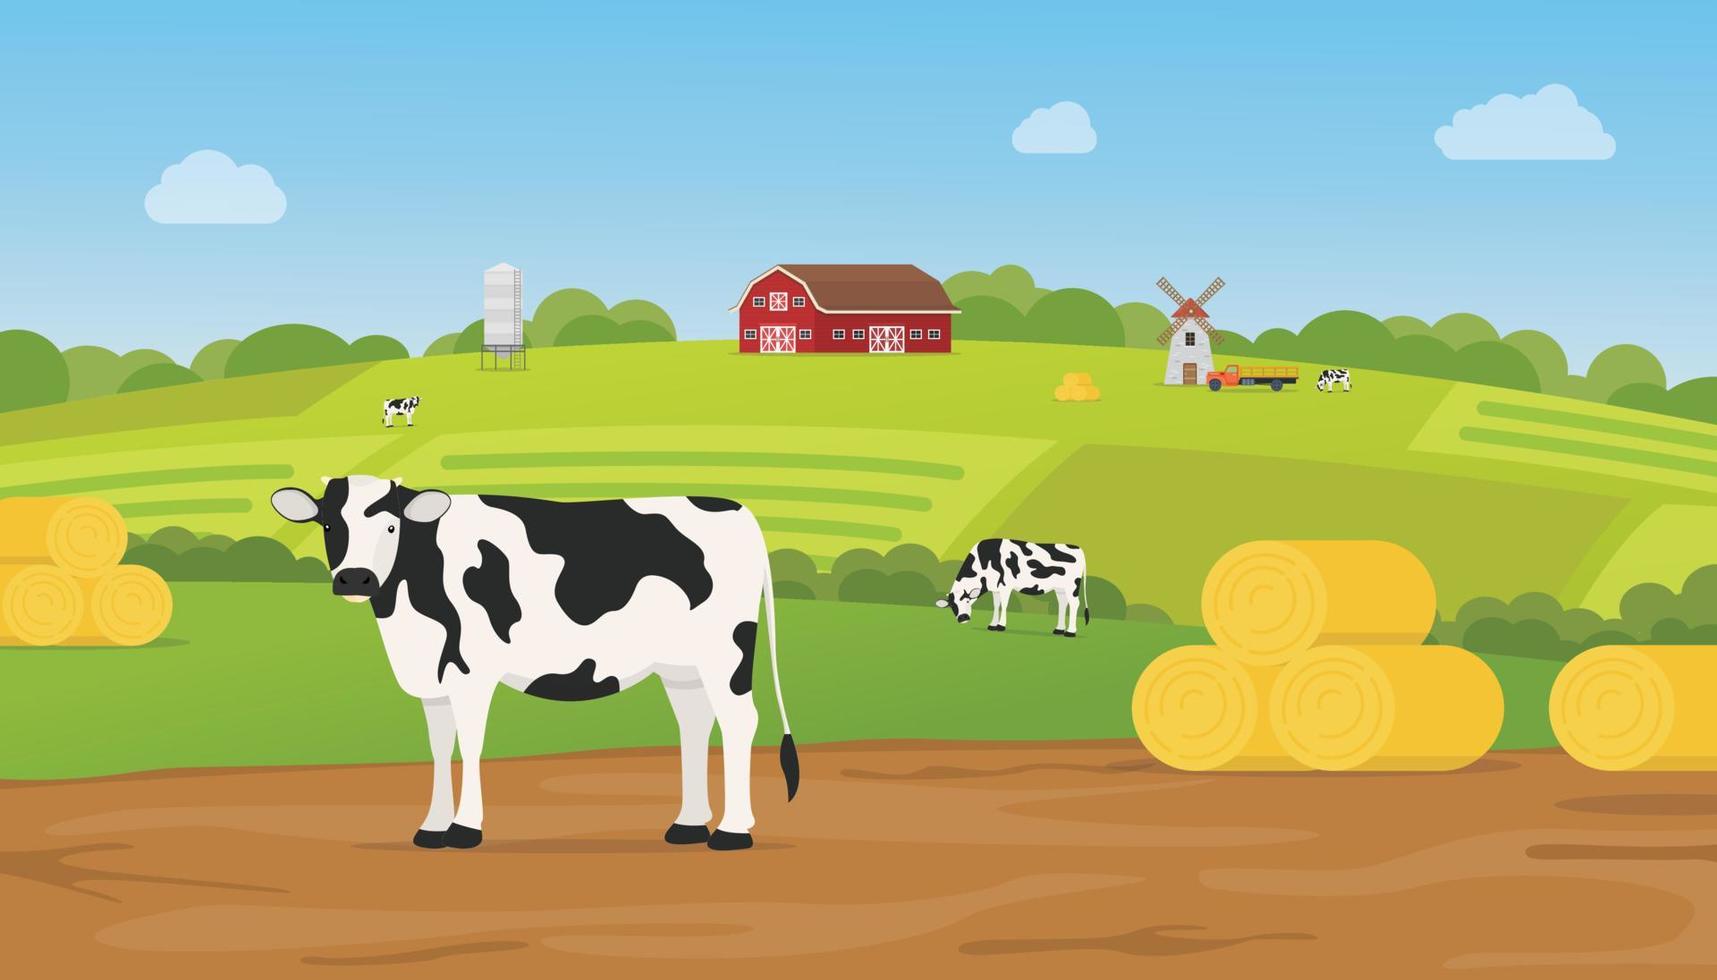 Viehfarm mit Kuh auf Ackerland mit grünen Hügelbergen vektor